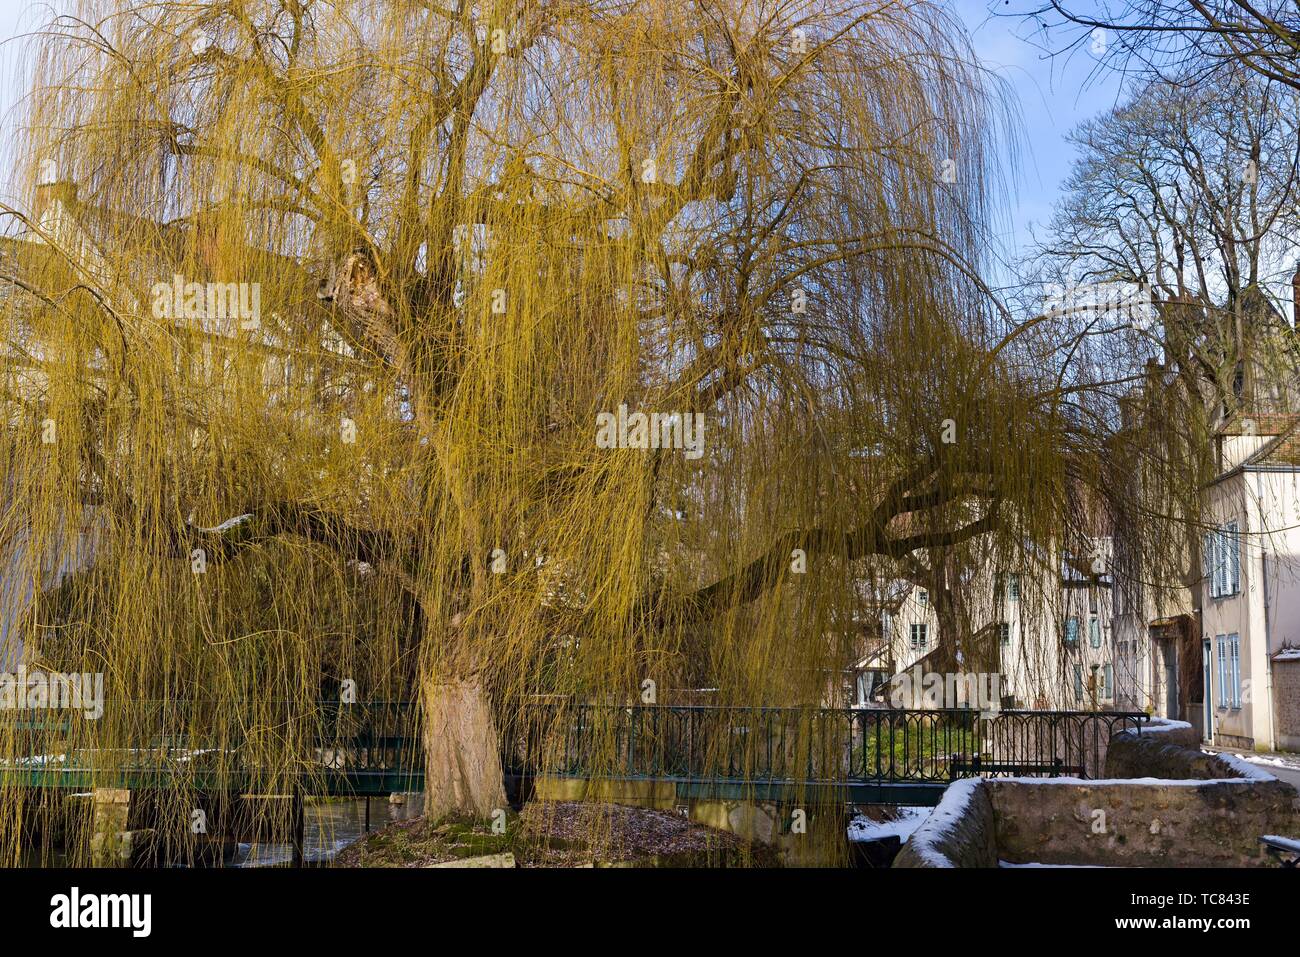 saule pleureur (Salix babylonica) sur les bords de la riviere Eure, Chartres, departement d'Eure-et-Loir, region Centre-Val de Loire, France, Stock Photo